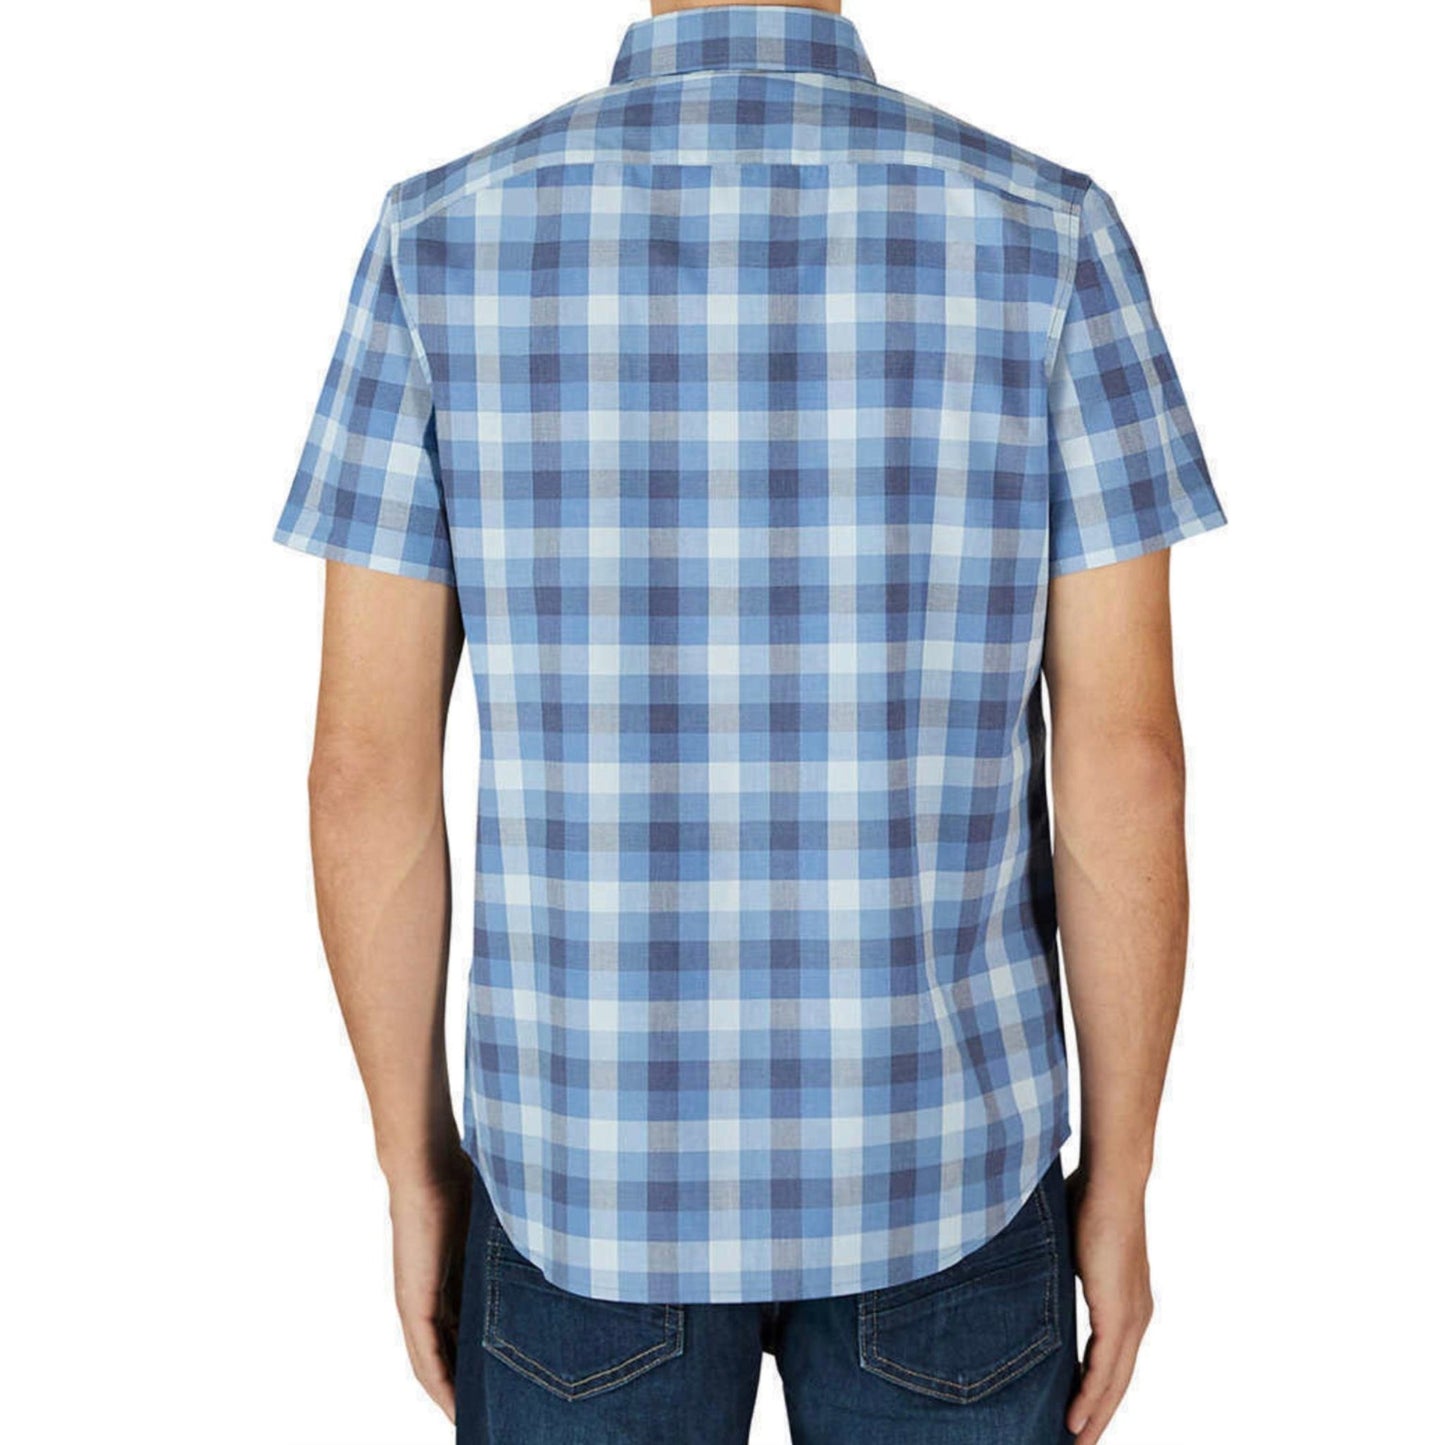 Lee Men's Short Sleeve Button Down Stretch Woven Shirt, Blue